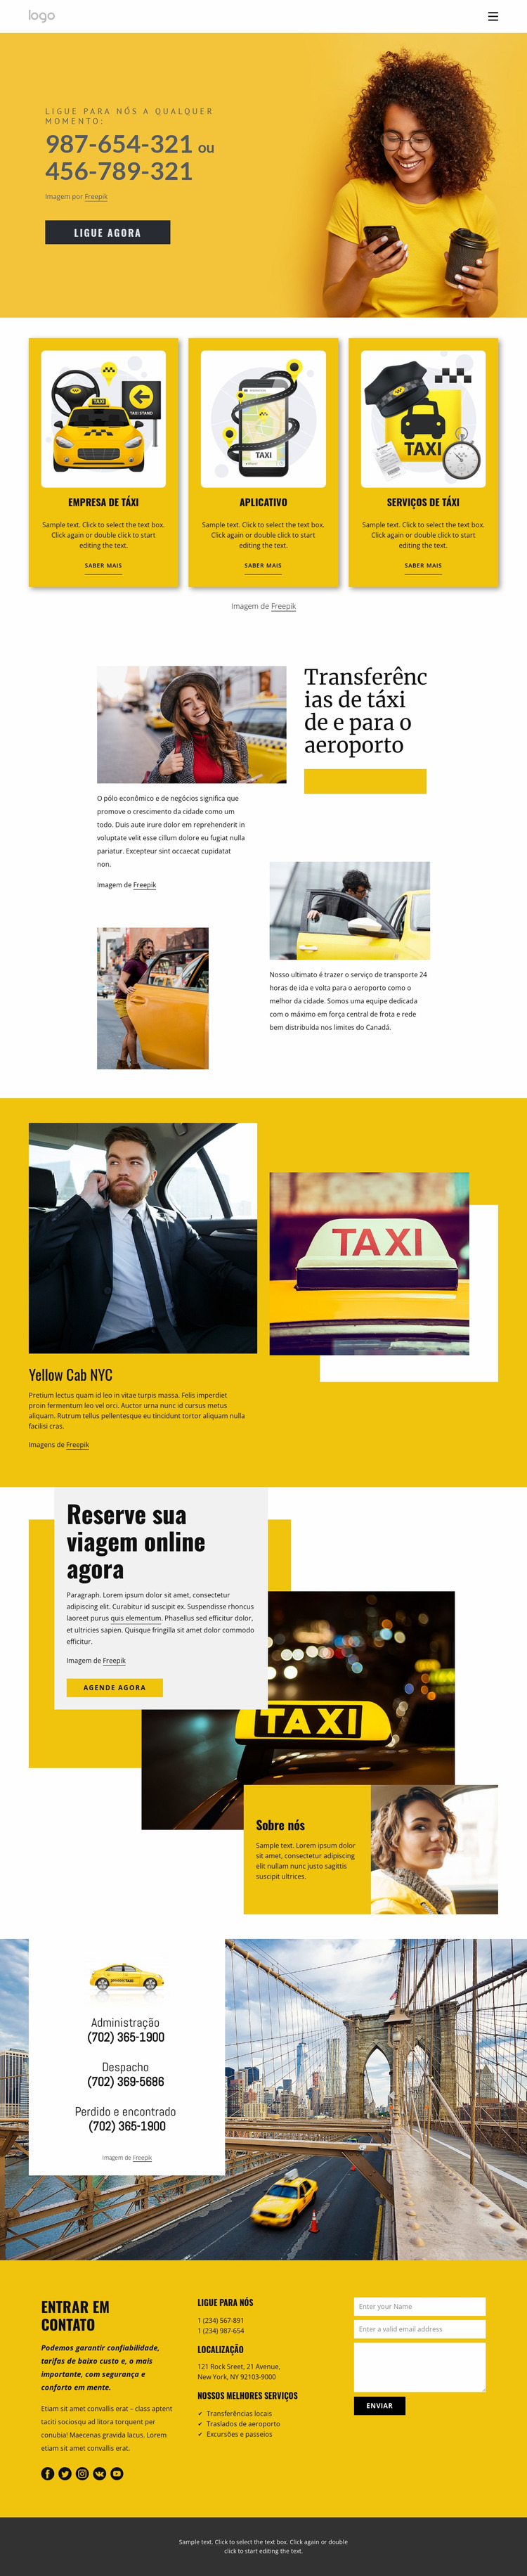 Serviço de táxi de qualidade Template Joomla